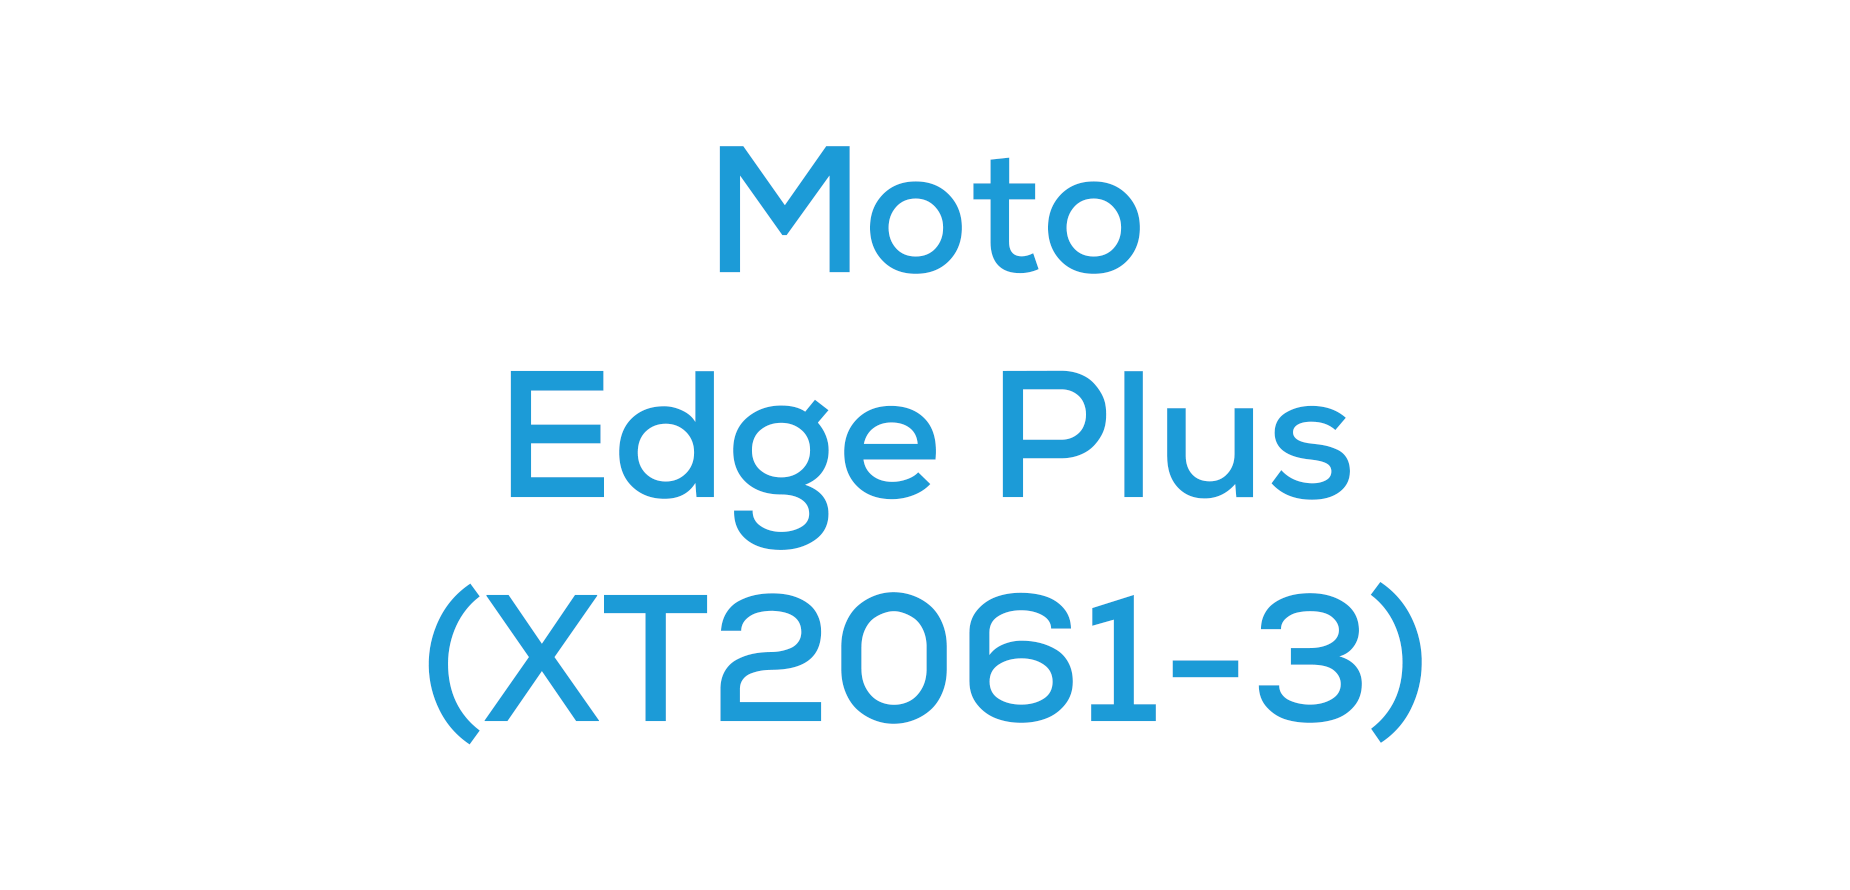 Edge Plus 2020 (2061-3)